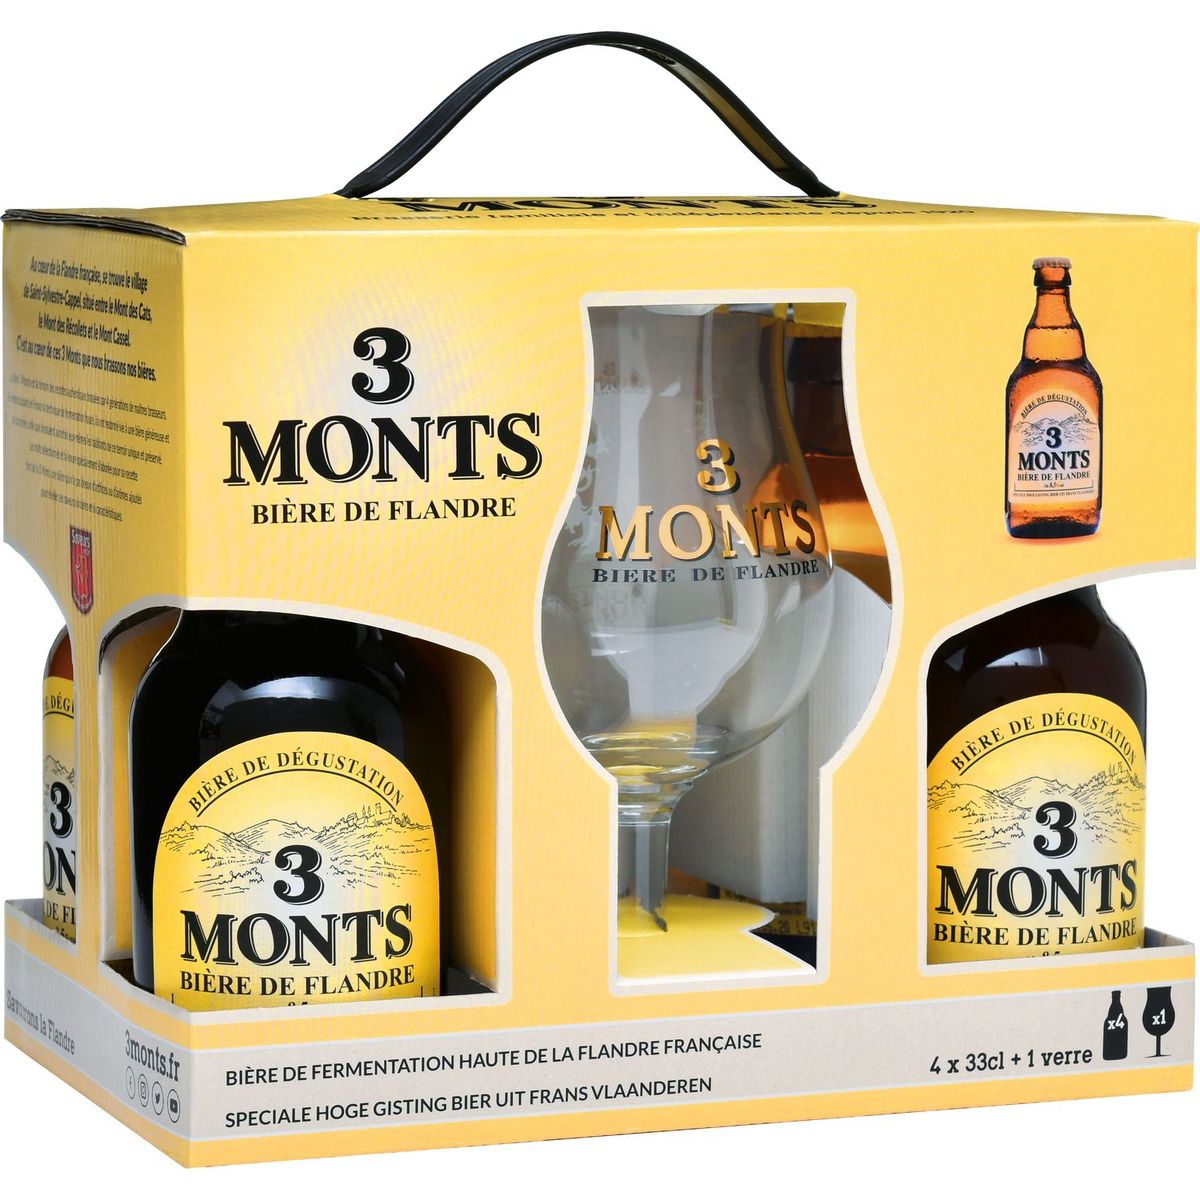 3 MONTS Bière blonde coffret 8,5% bouteilles + 1 verre 4x33cl pas cher 